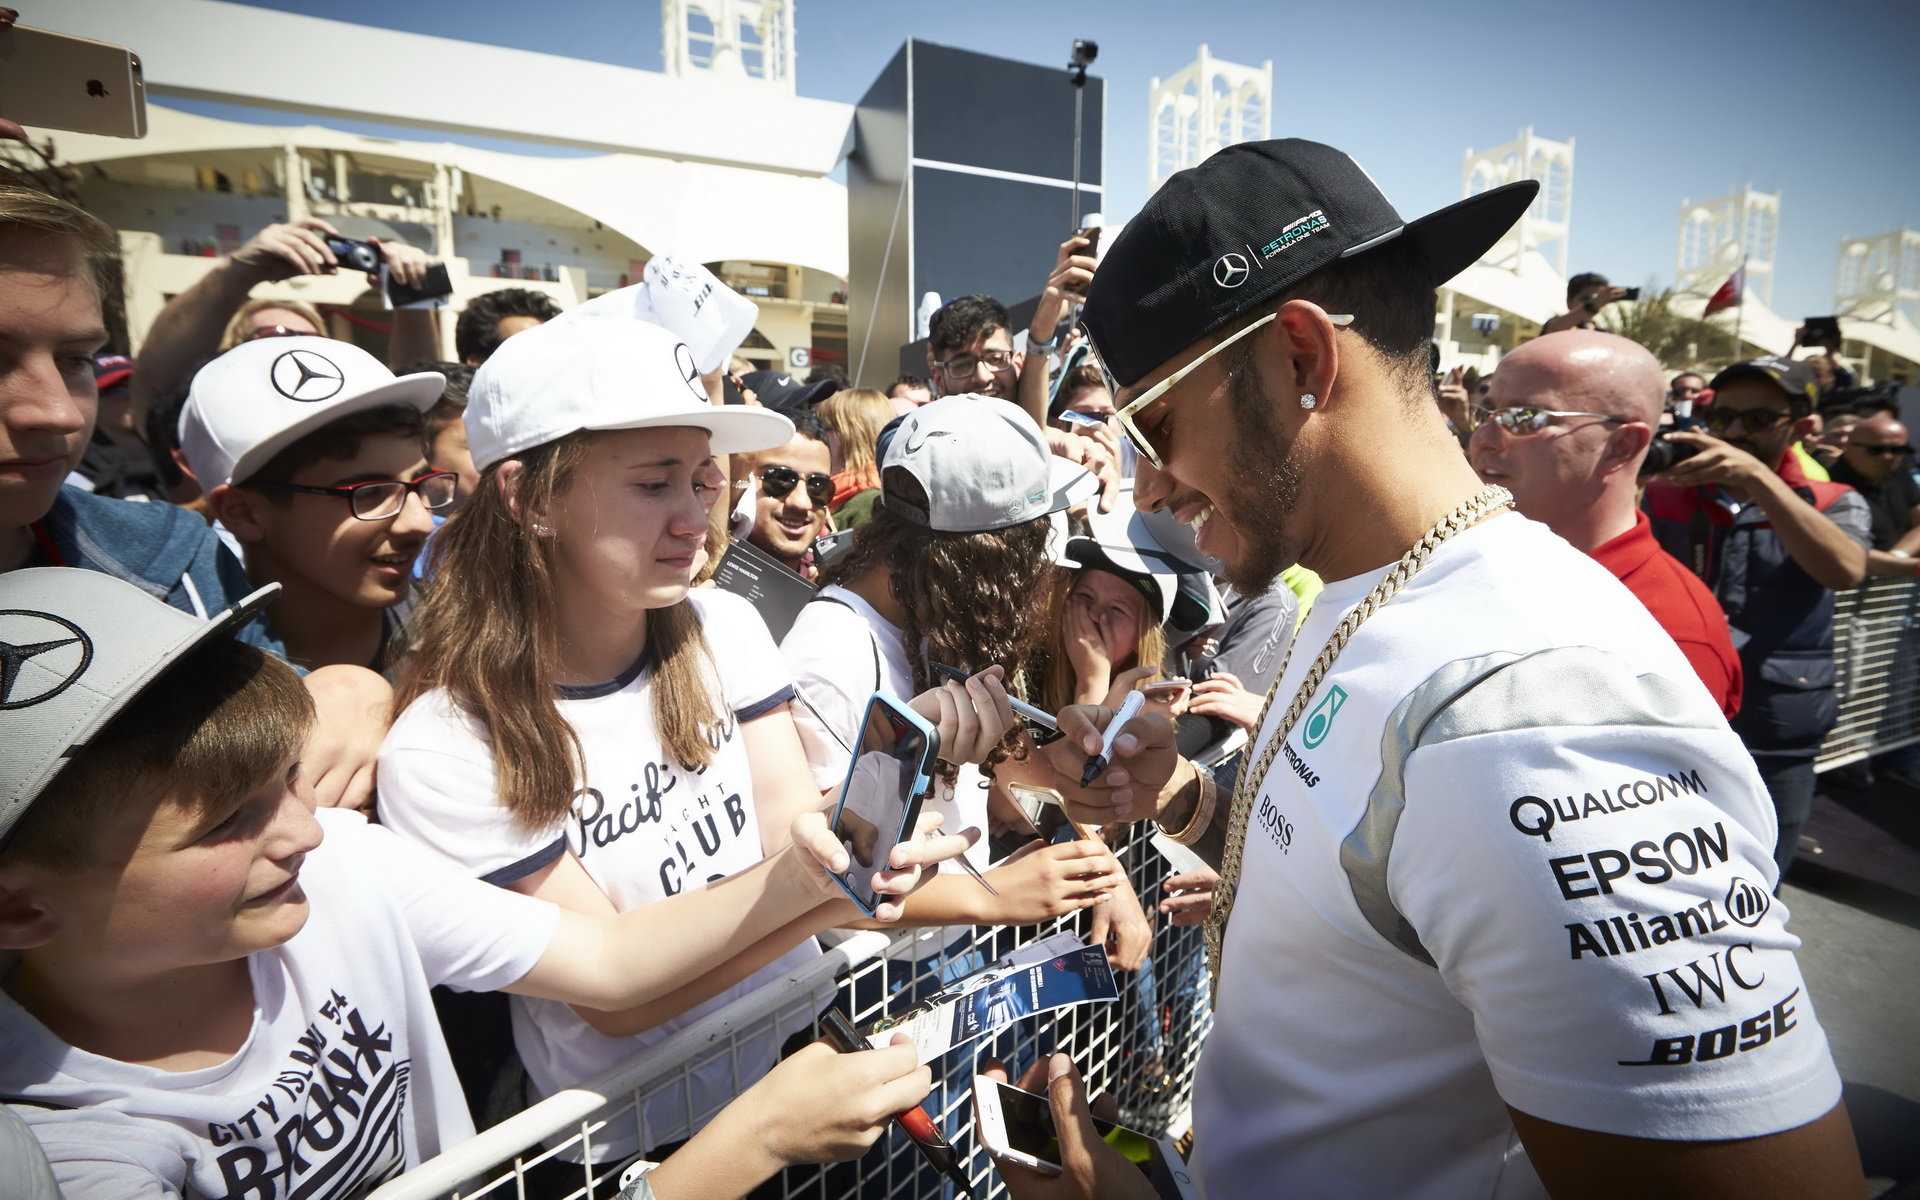 Lewis Hamilton neprožívá úvod sezóny podle svých představ